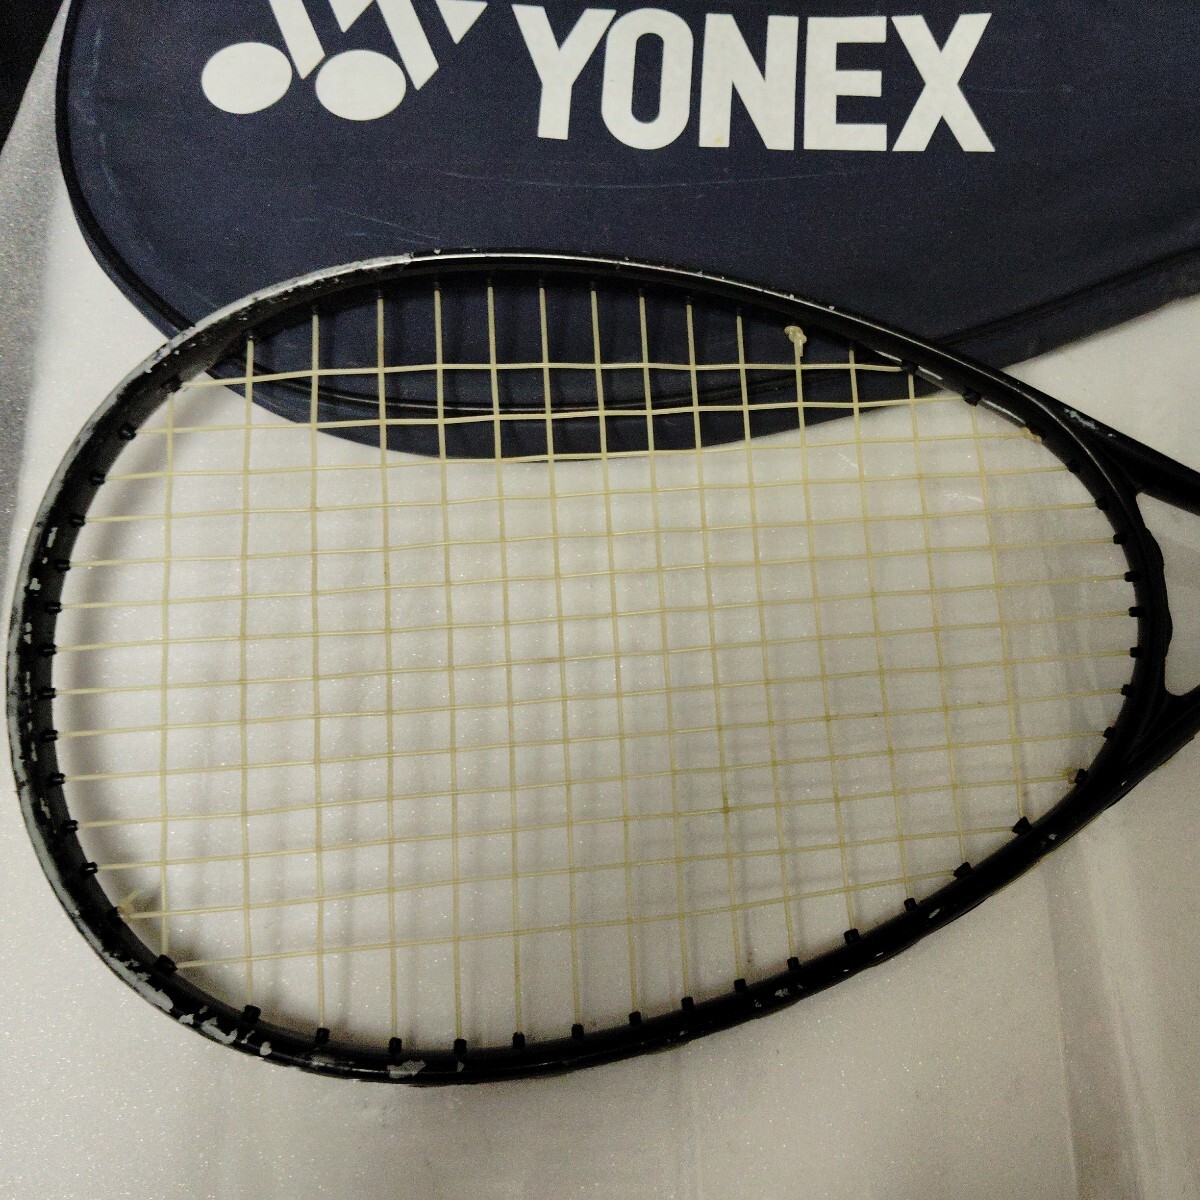  tennis racket YONEX Yonex soft tennis racket 